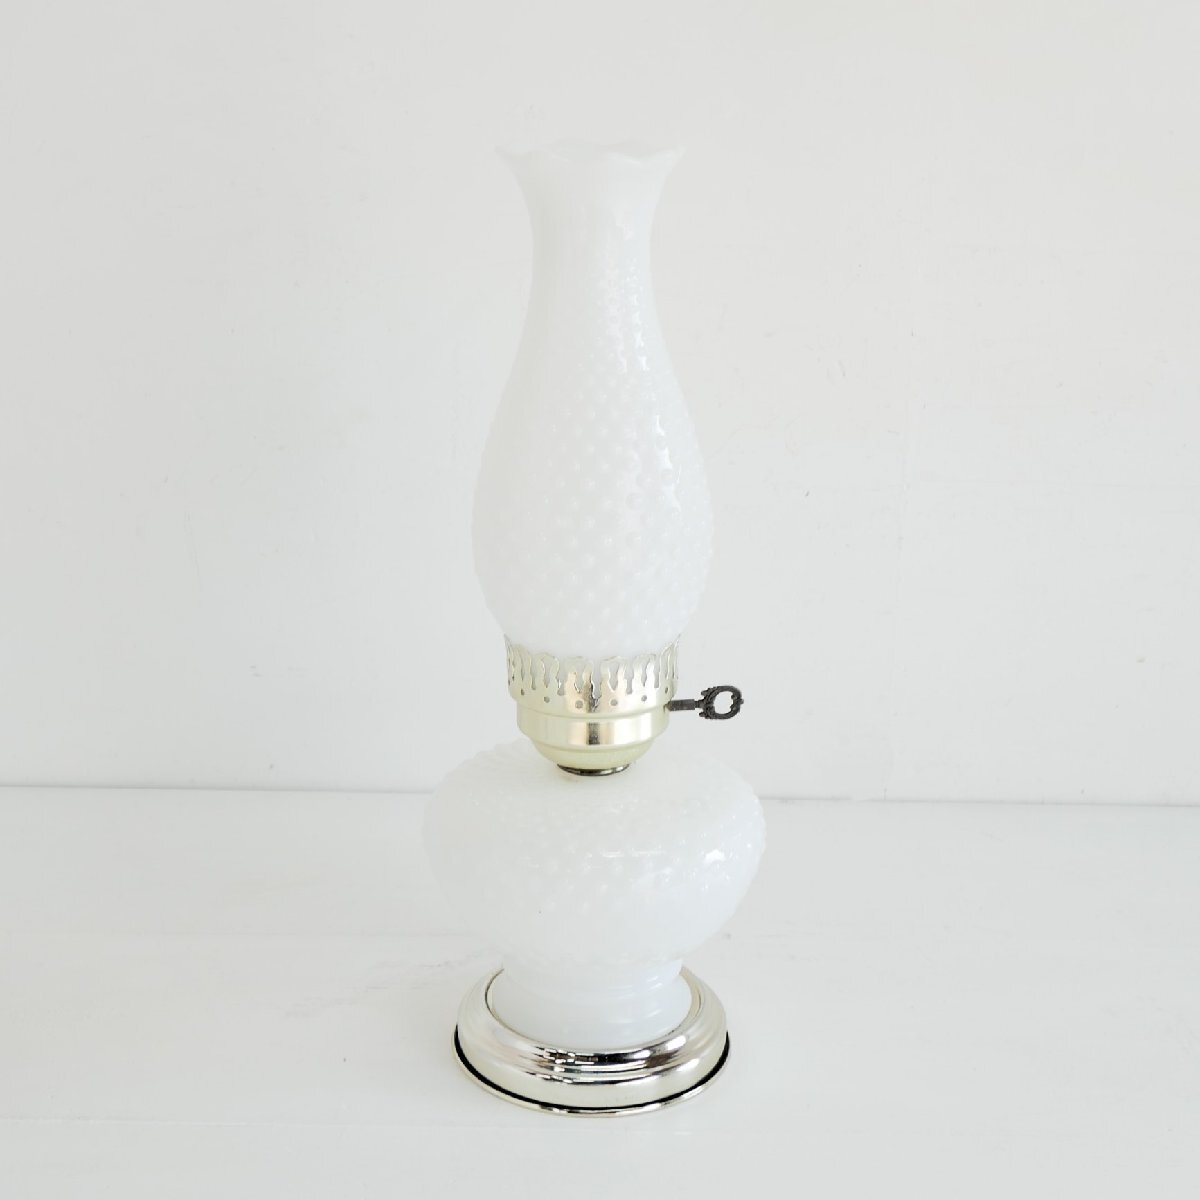 1960's ホブネイル ミルクガラス テーブルランプ / アメリカ オイルランプ風 ヴィンテージ アンティーク照明 #602-15-55-250_画像5